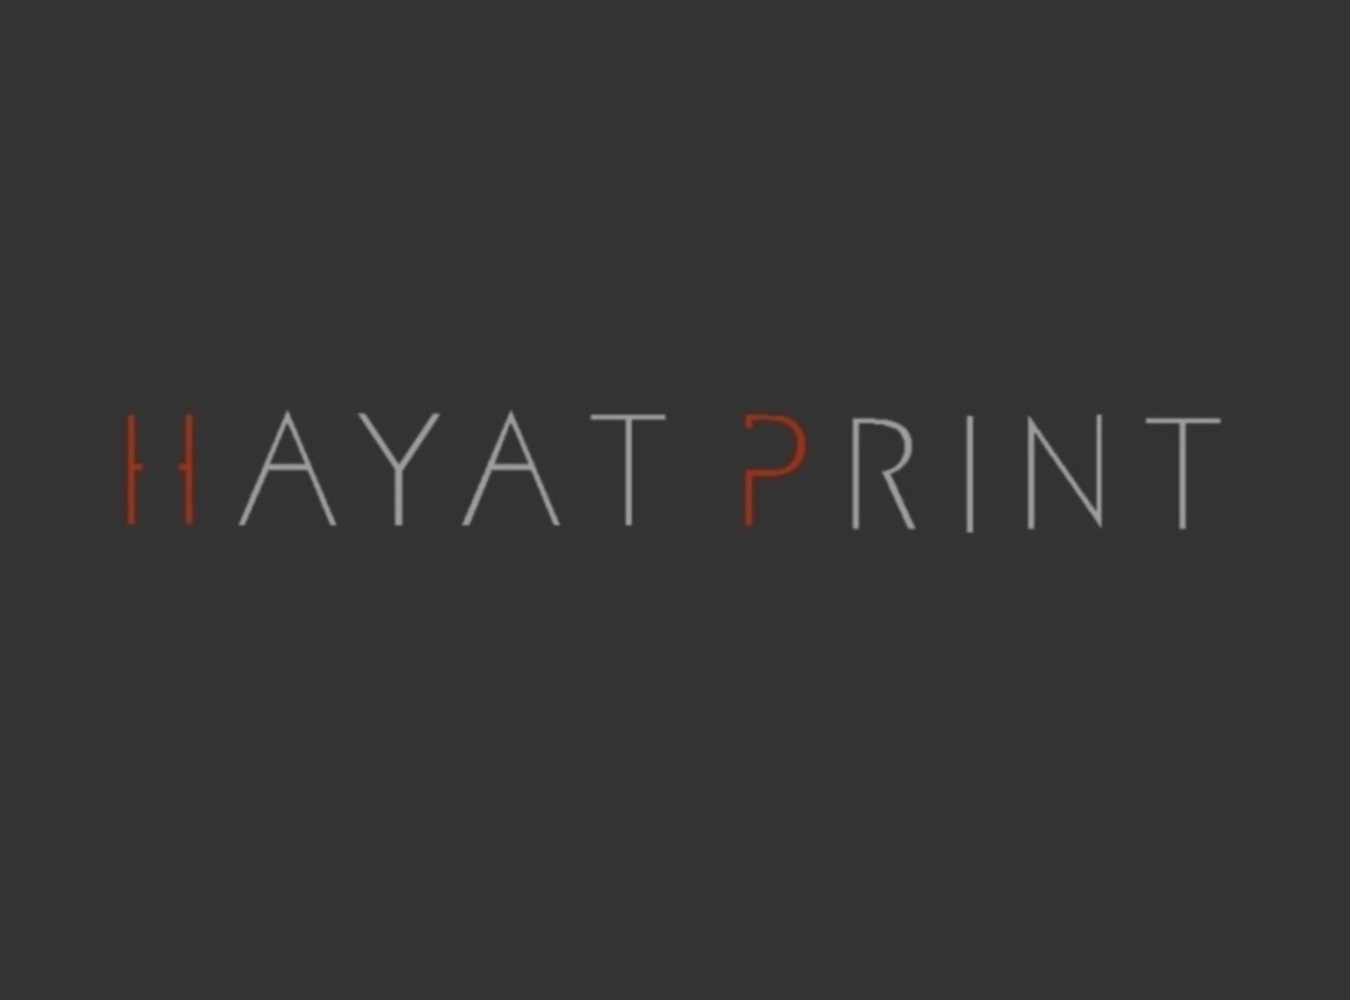 HayatPrint Company